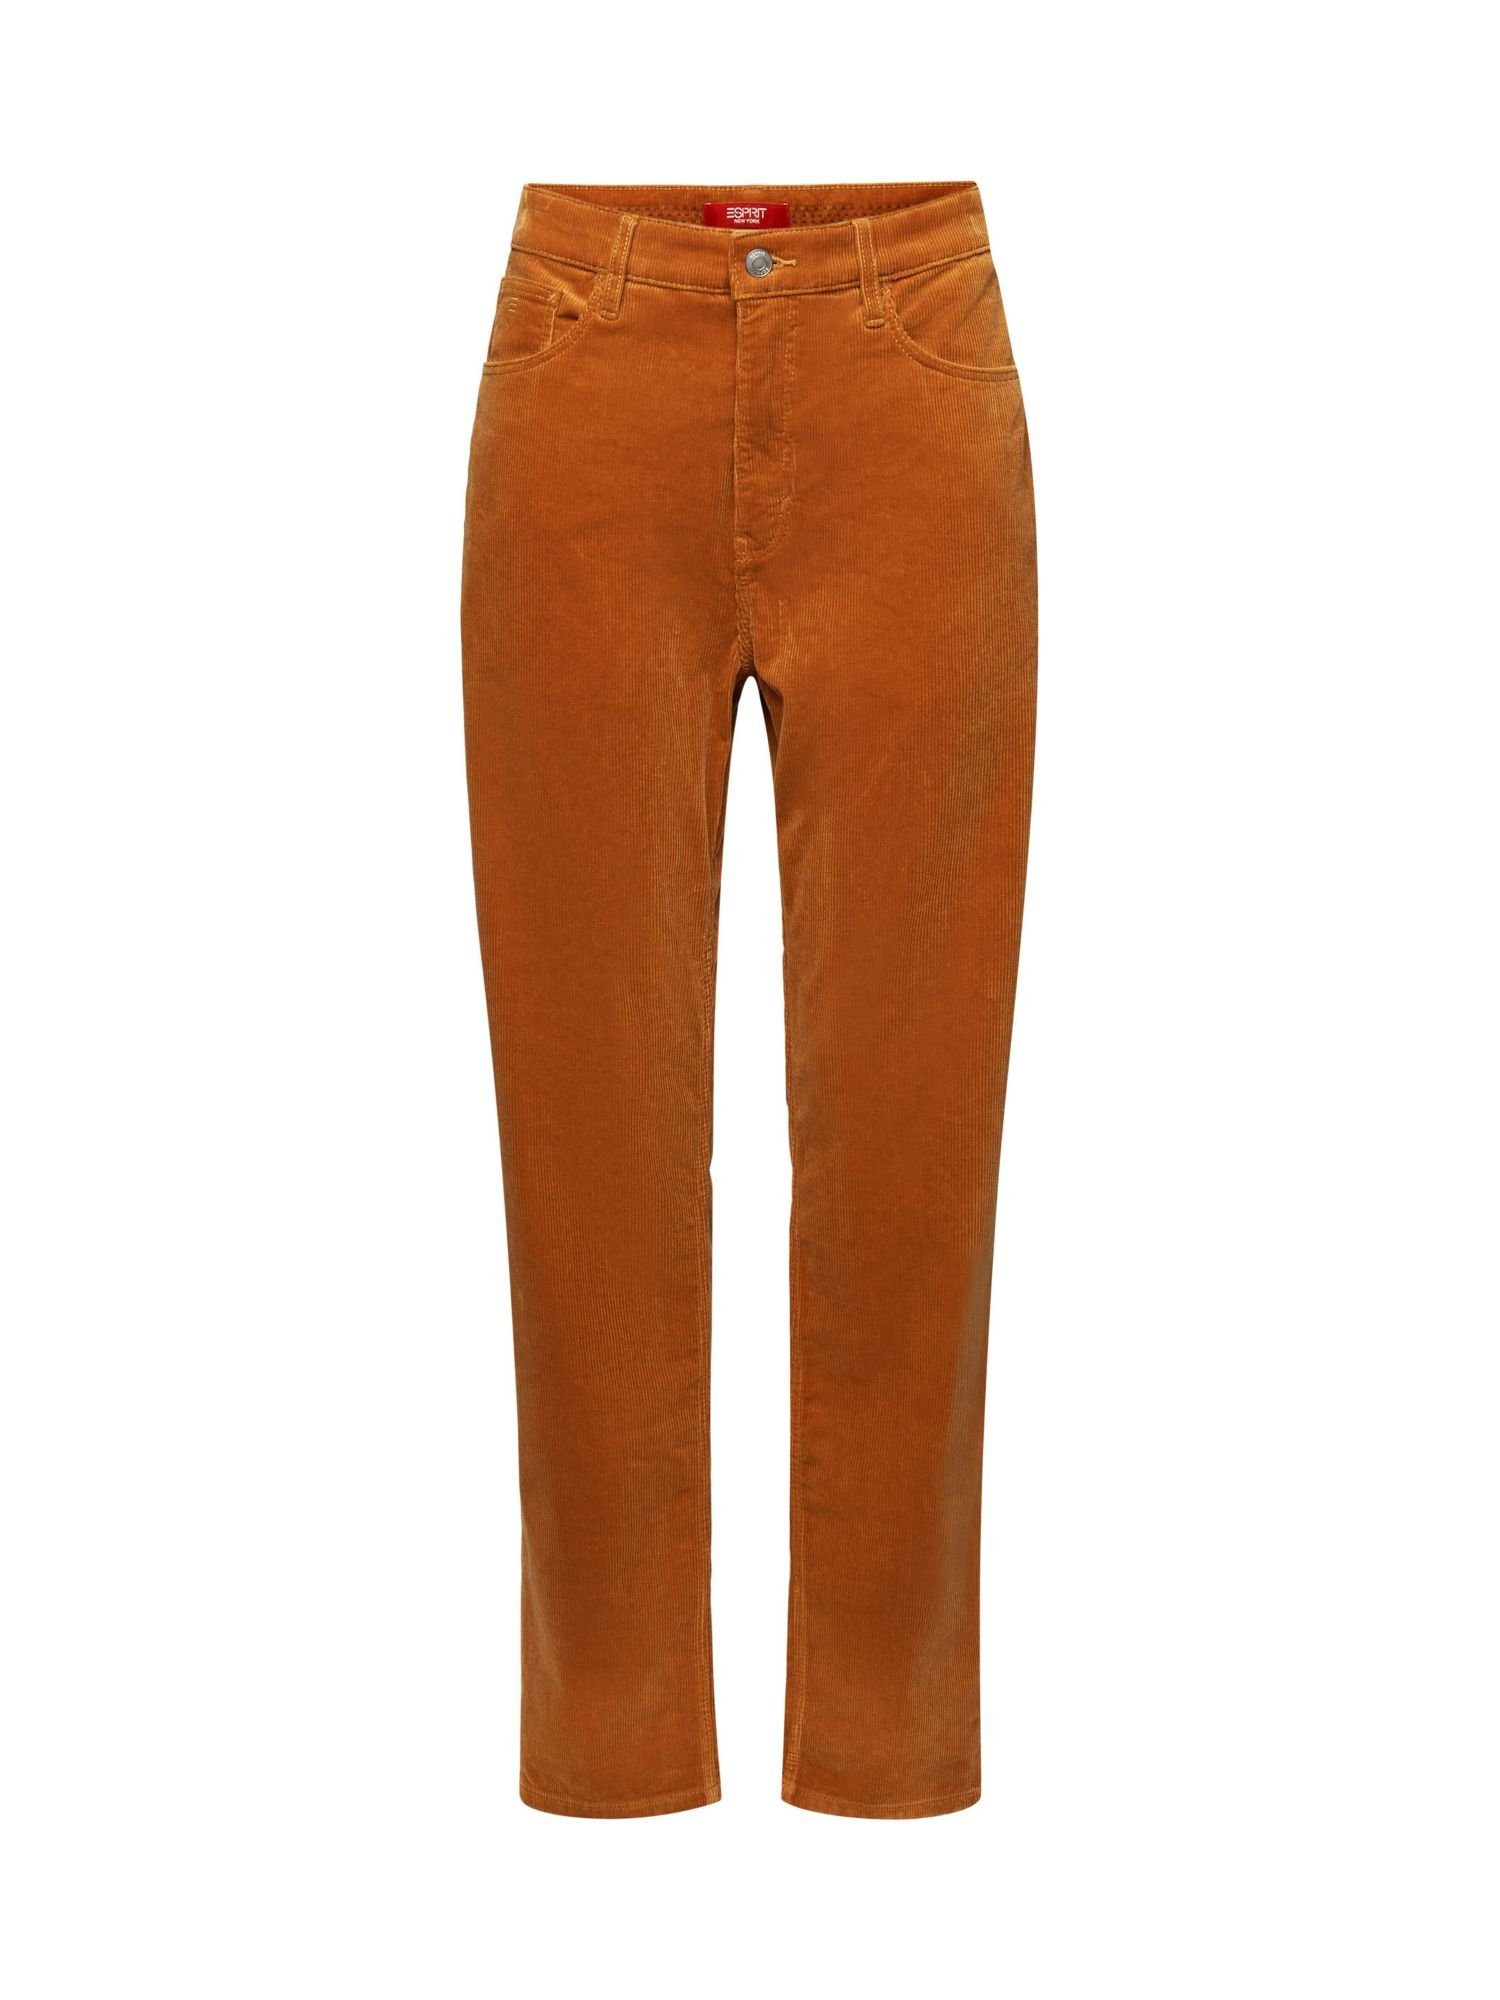 hohem und Esprit CARAMEL Slim-fit-Jeans Cordhose Passform gerader Bund mit